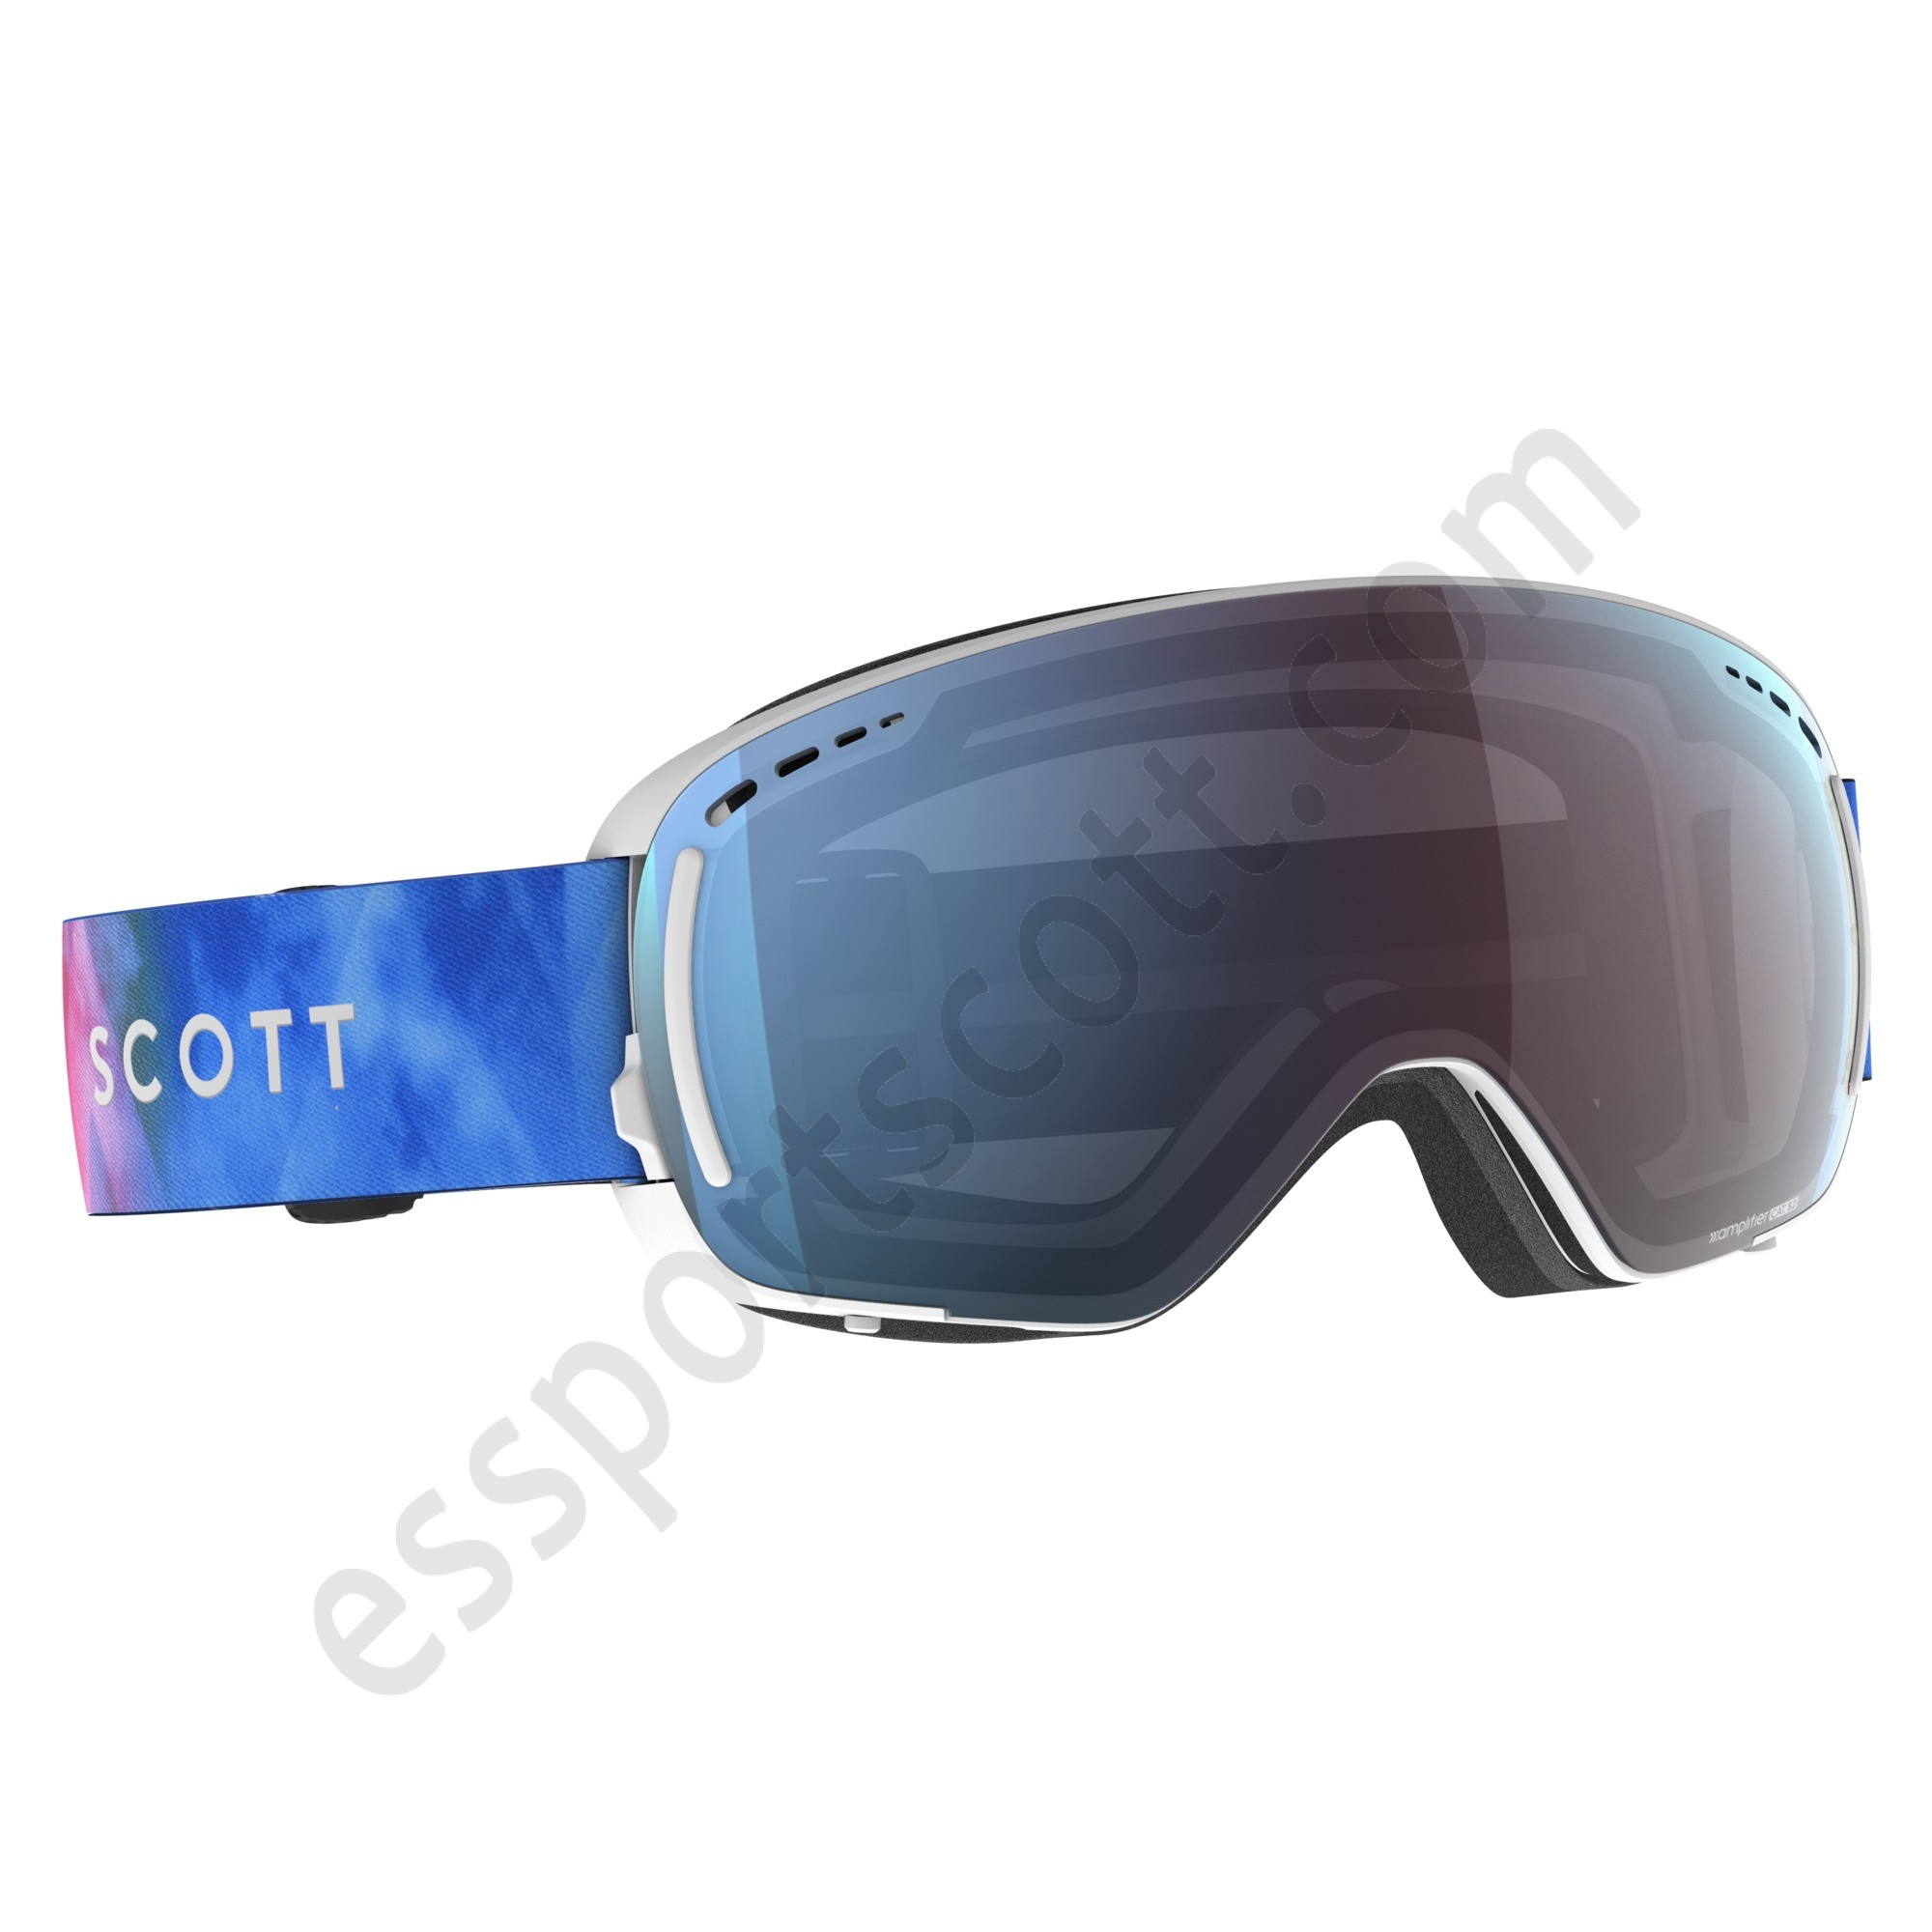 Scott Descuento ◇ LCG Compact Goggle - Scott Descuento ◇ LCG Compact Goggle